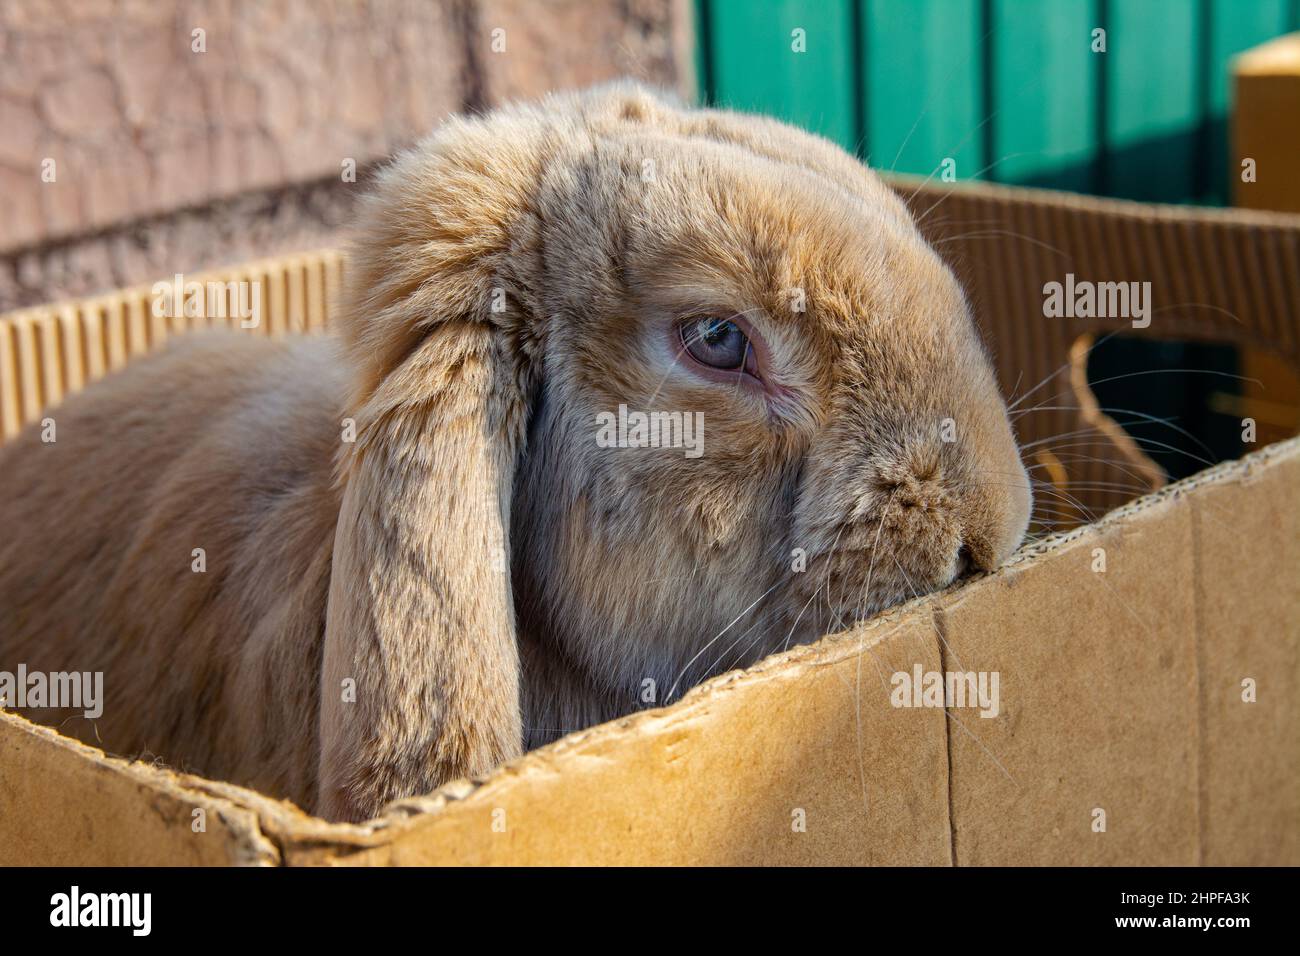 Kaninchen zum Verkauf auf dem Markt. Ein schönes Hauskaninchen mit braunen Haaren und hängenden Ohren sitzt in einem Karton. Stockfoto